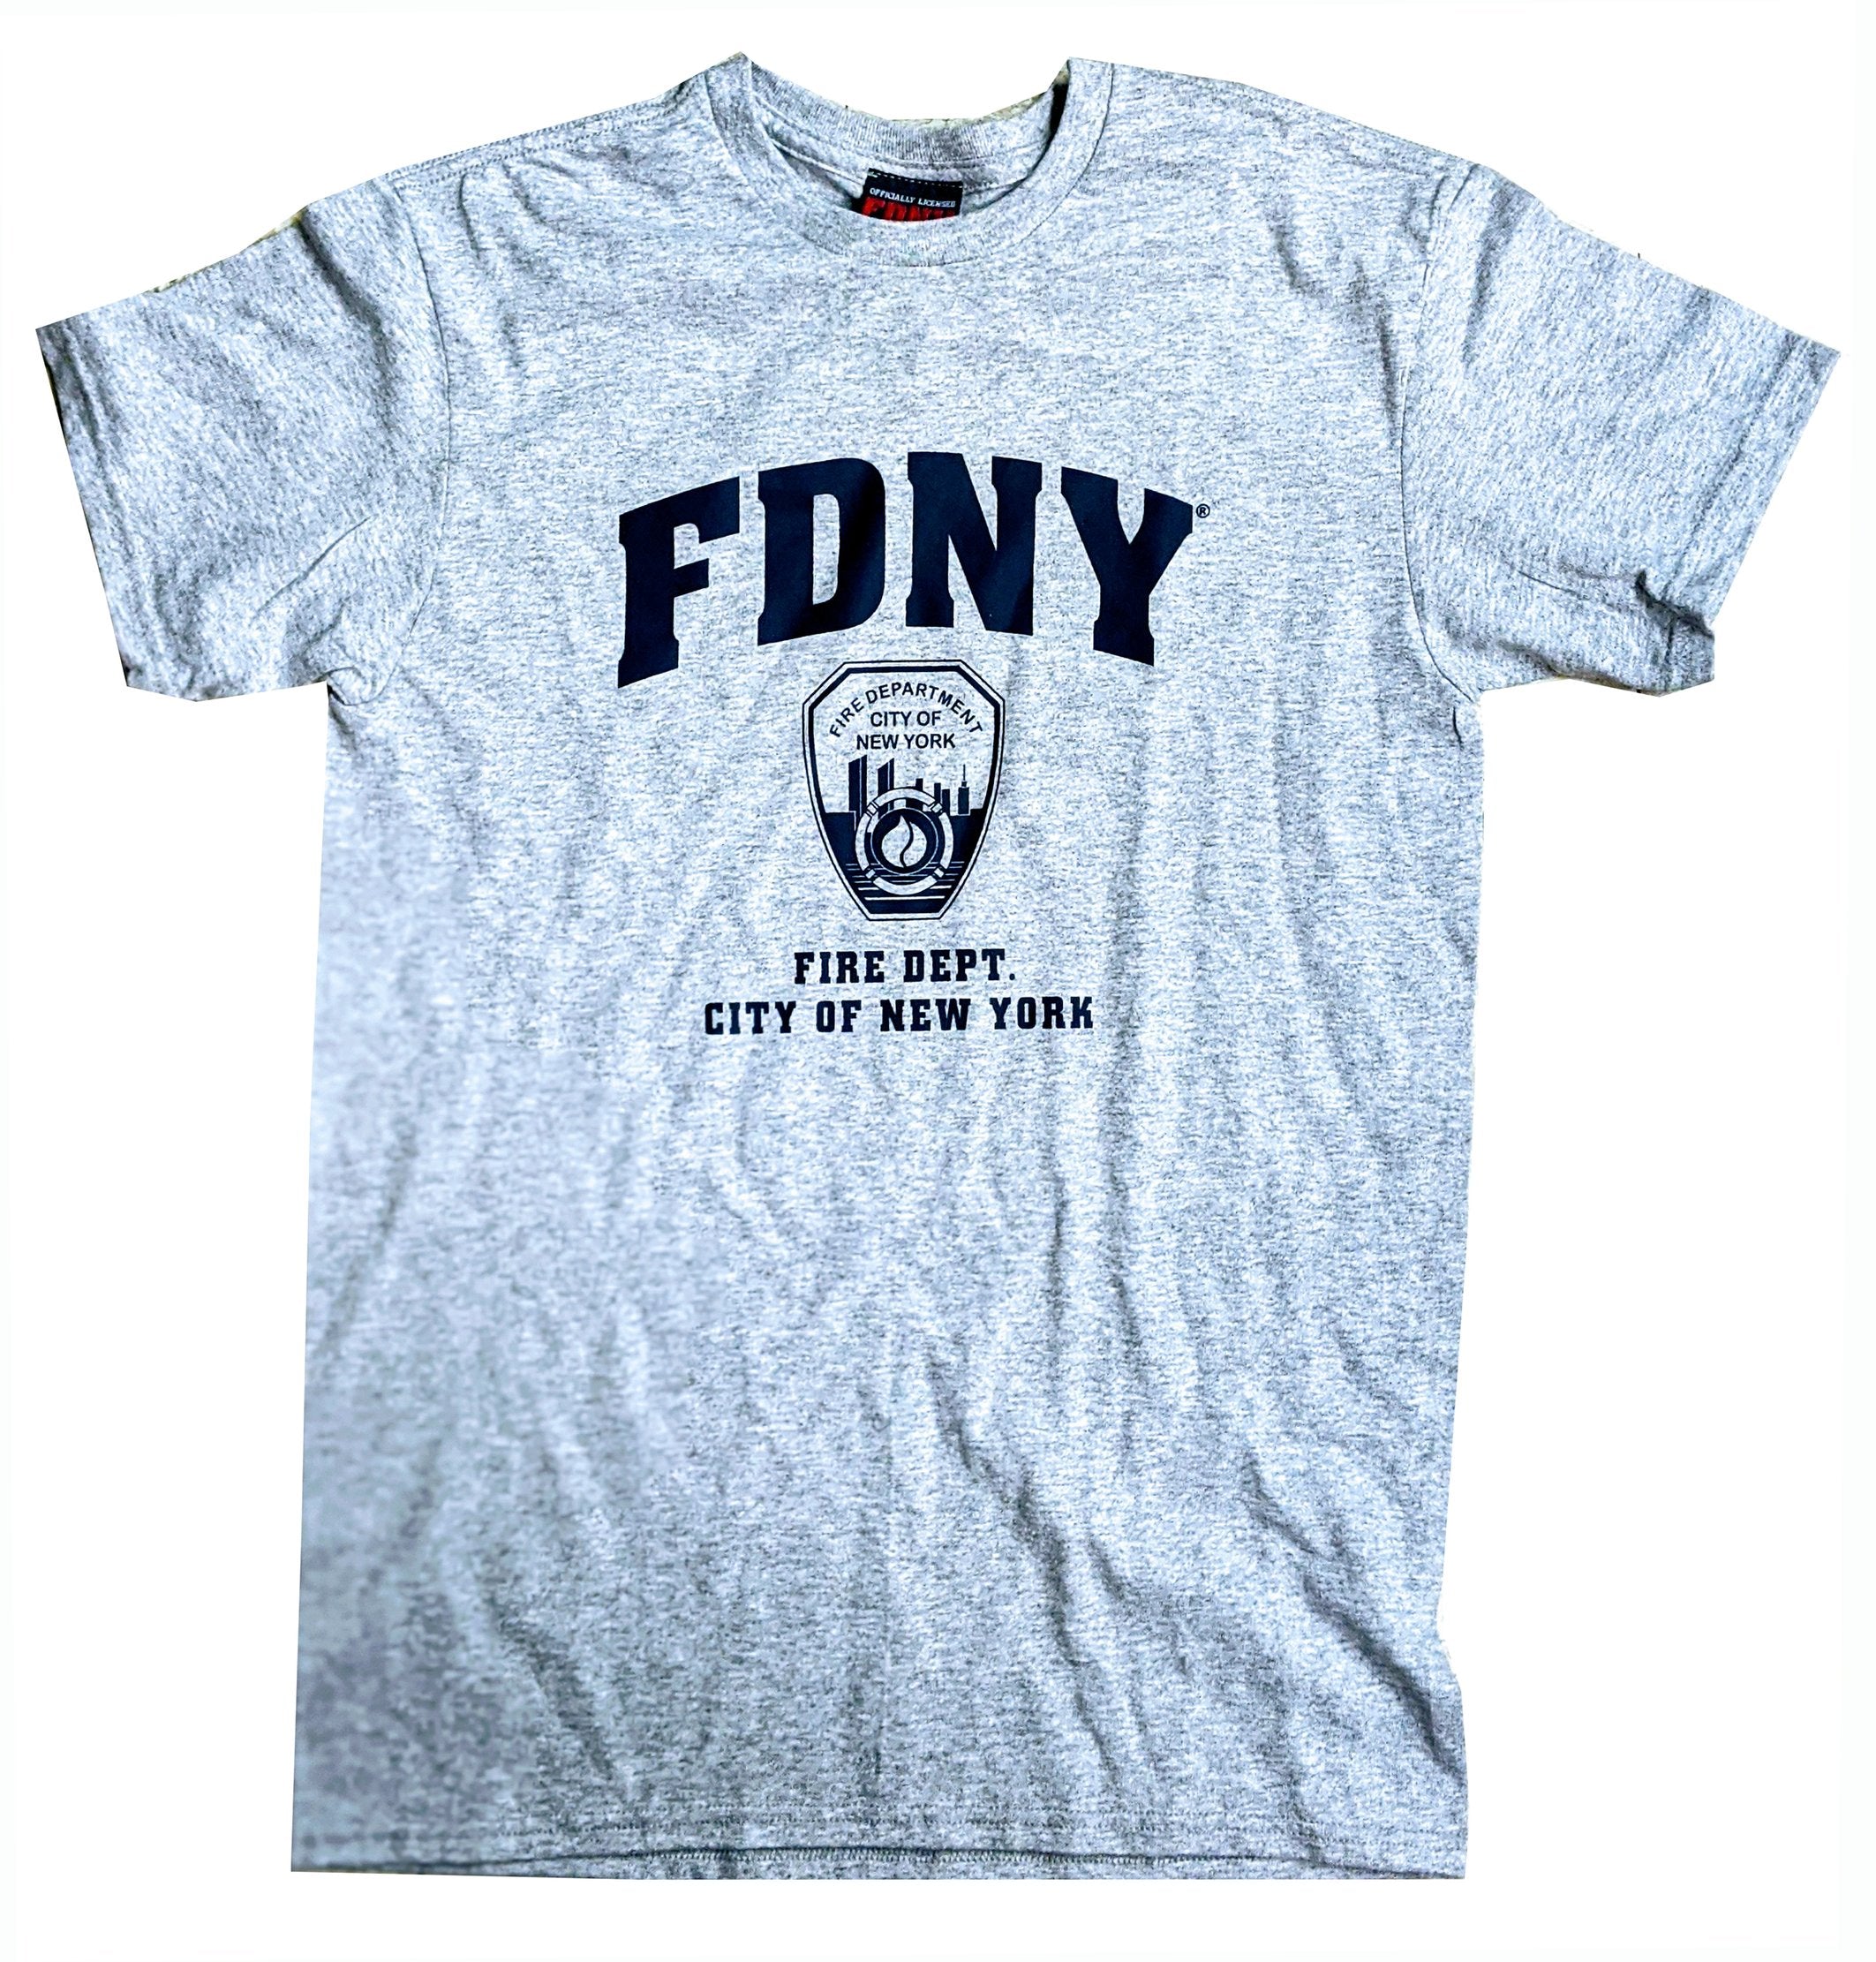 New York City' Men's T-Shirt